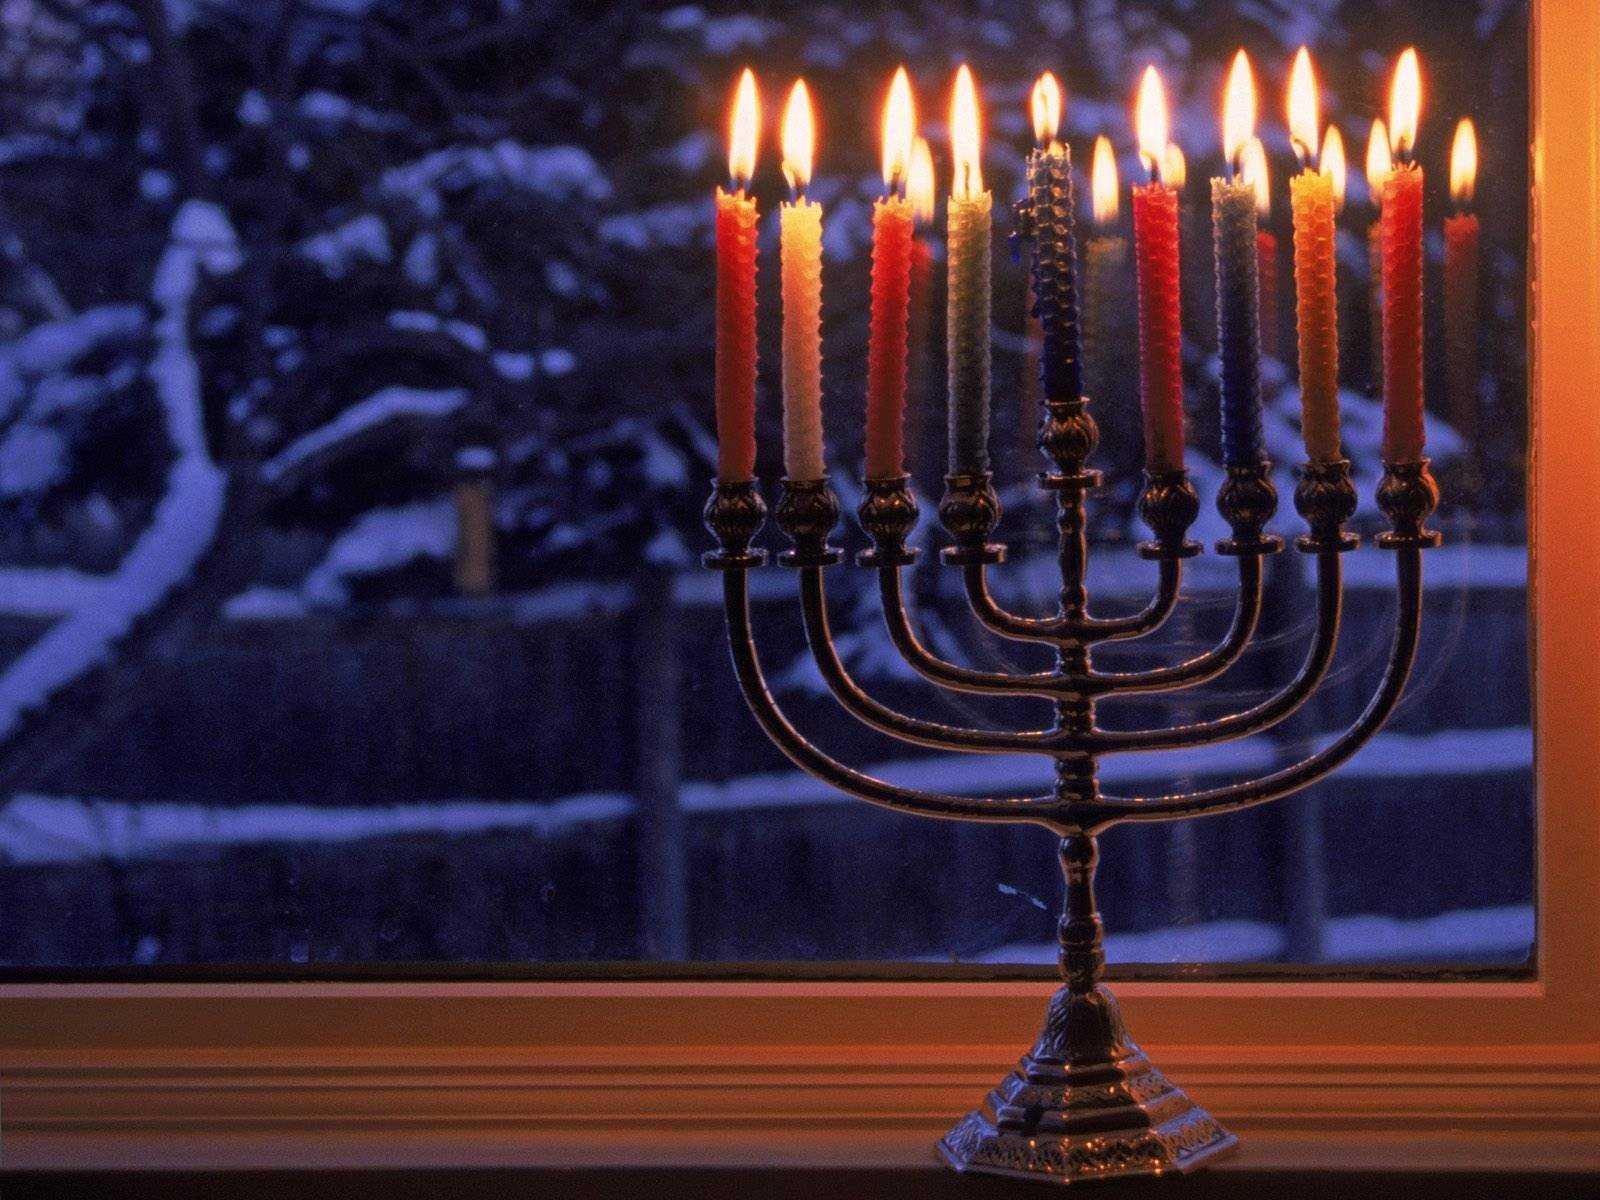 Еврейский новый год - ханука 2021: традиции дня и поздравления